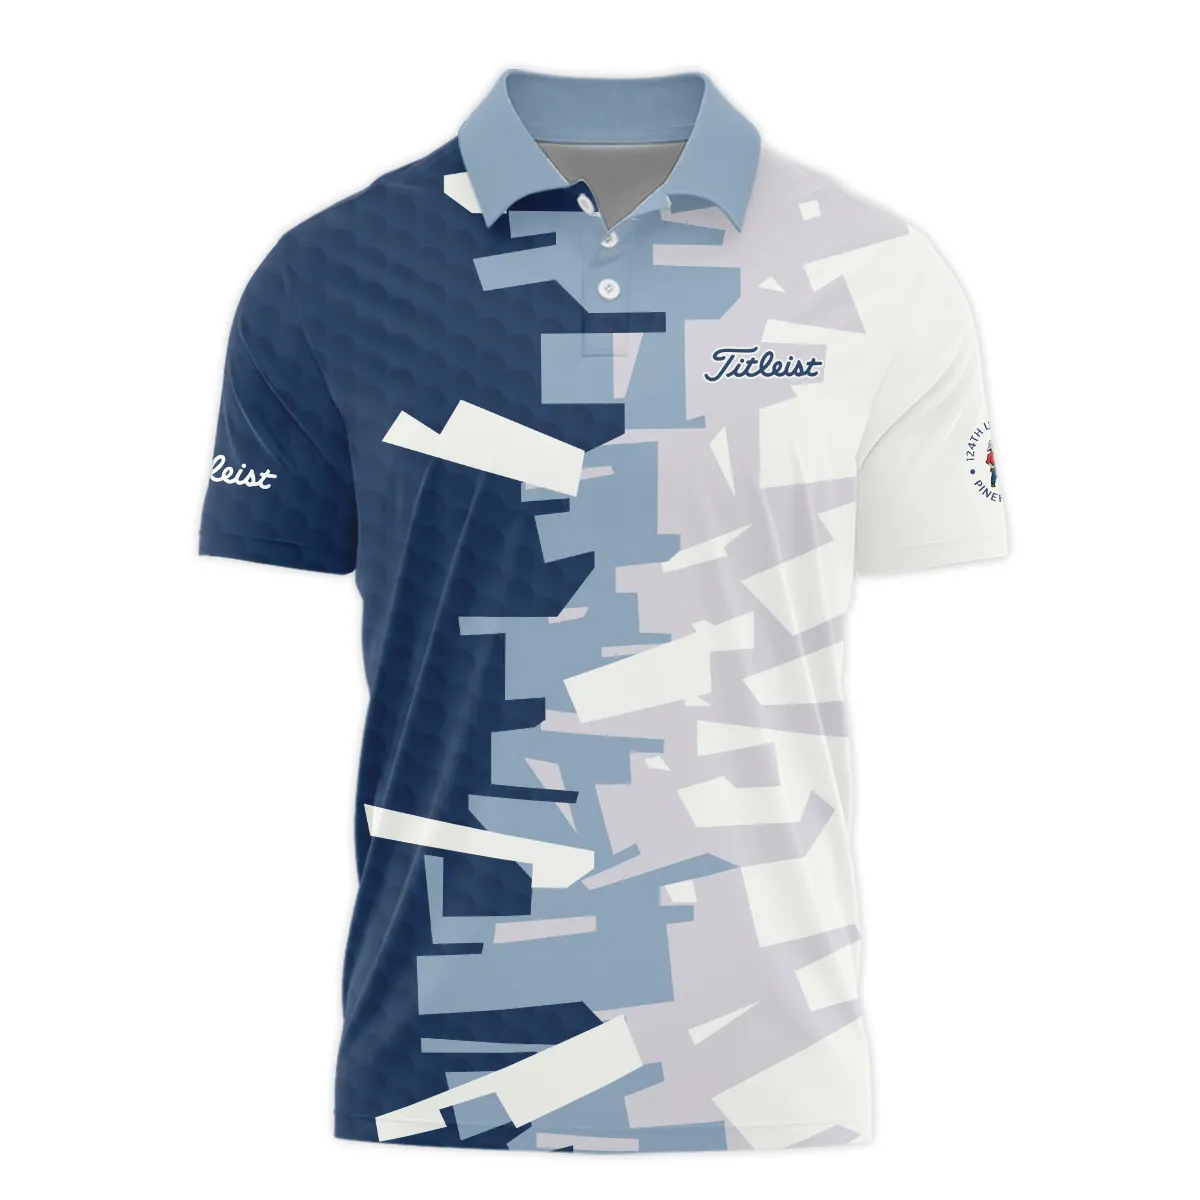 Golf Abstract Pattern 124th U.S. Open Pinehurst Titleist Zipper Hoodie Shirt Style Classic